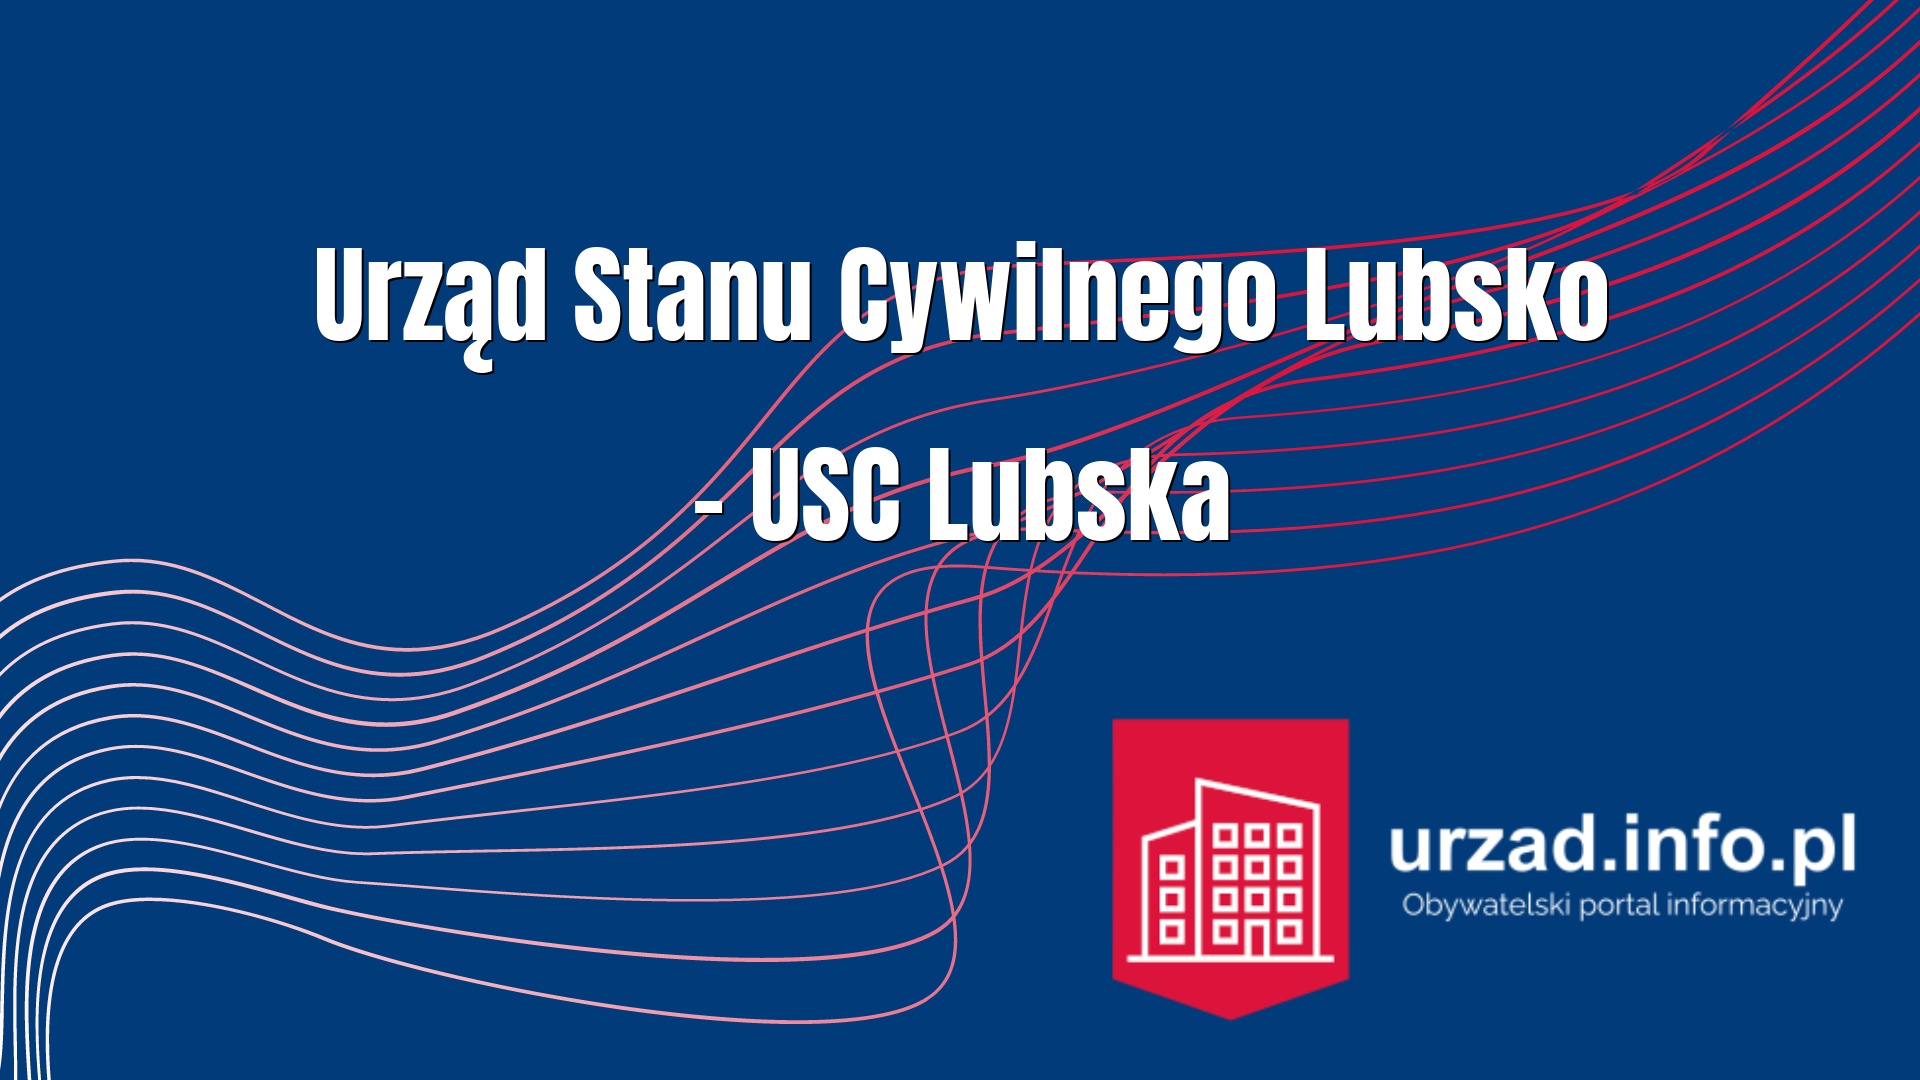 Urząd Stanu Cywilnego Lubsko – USC Lubska